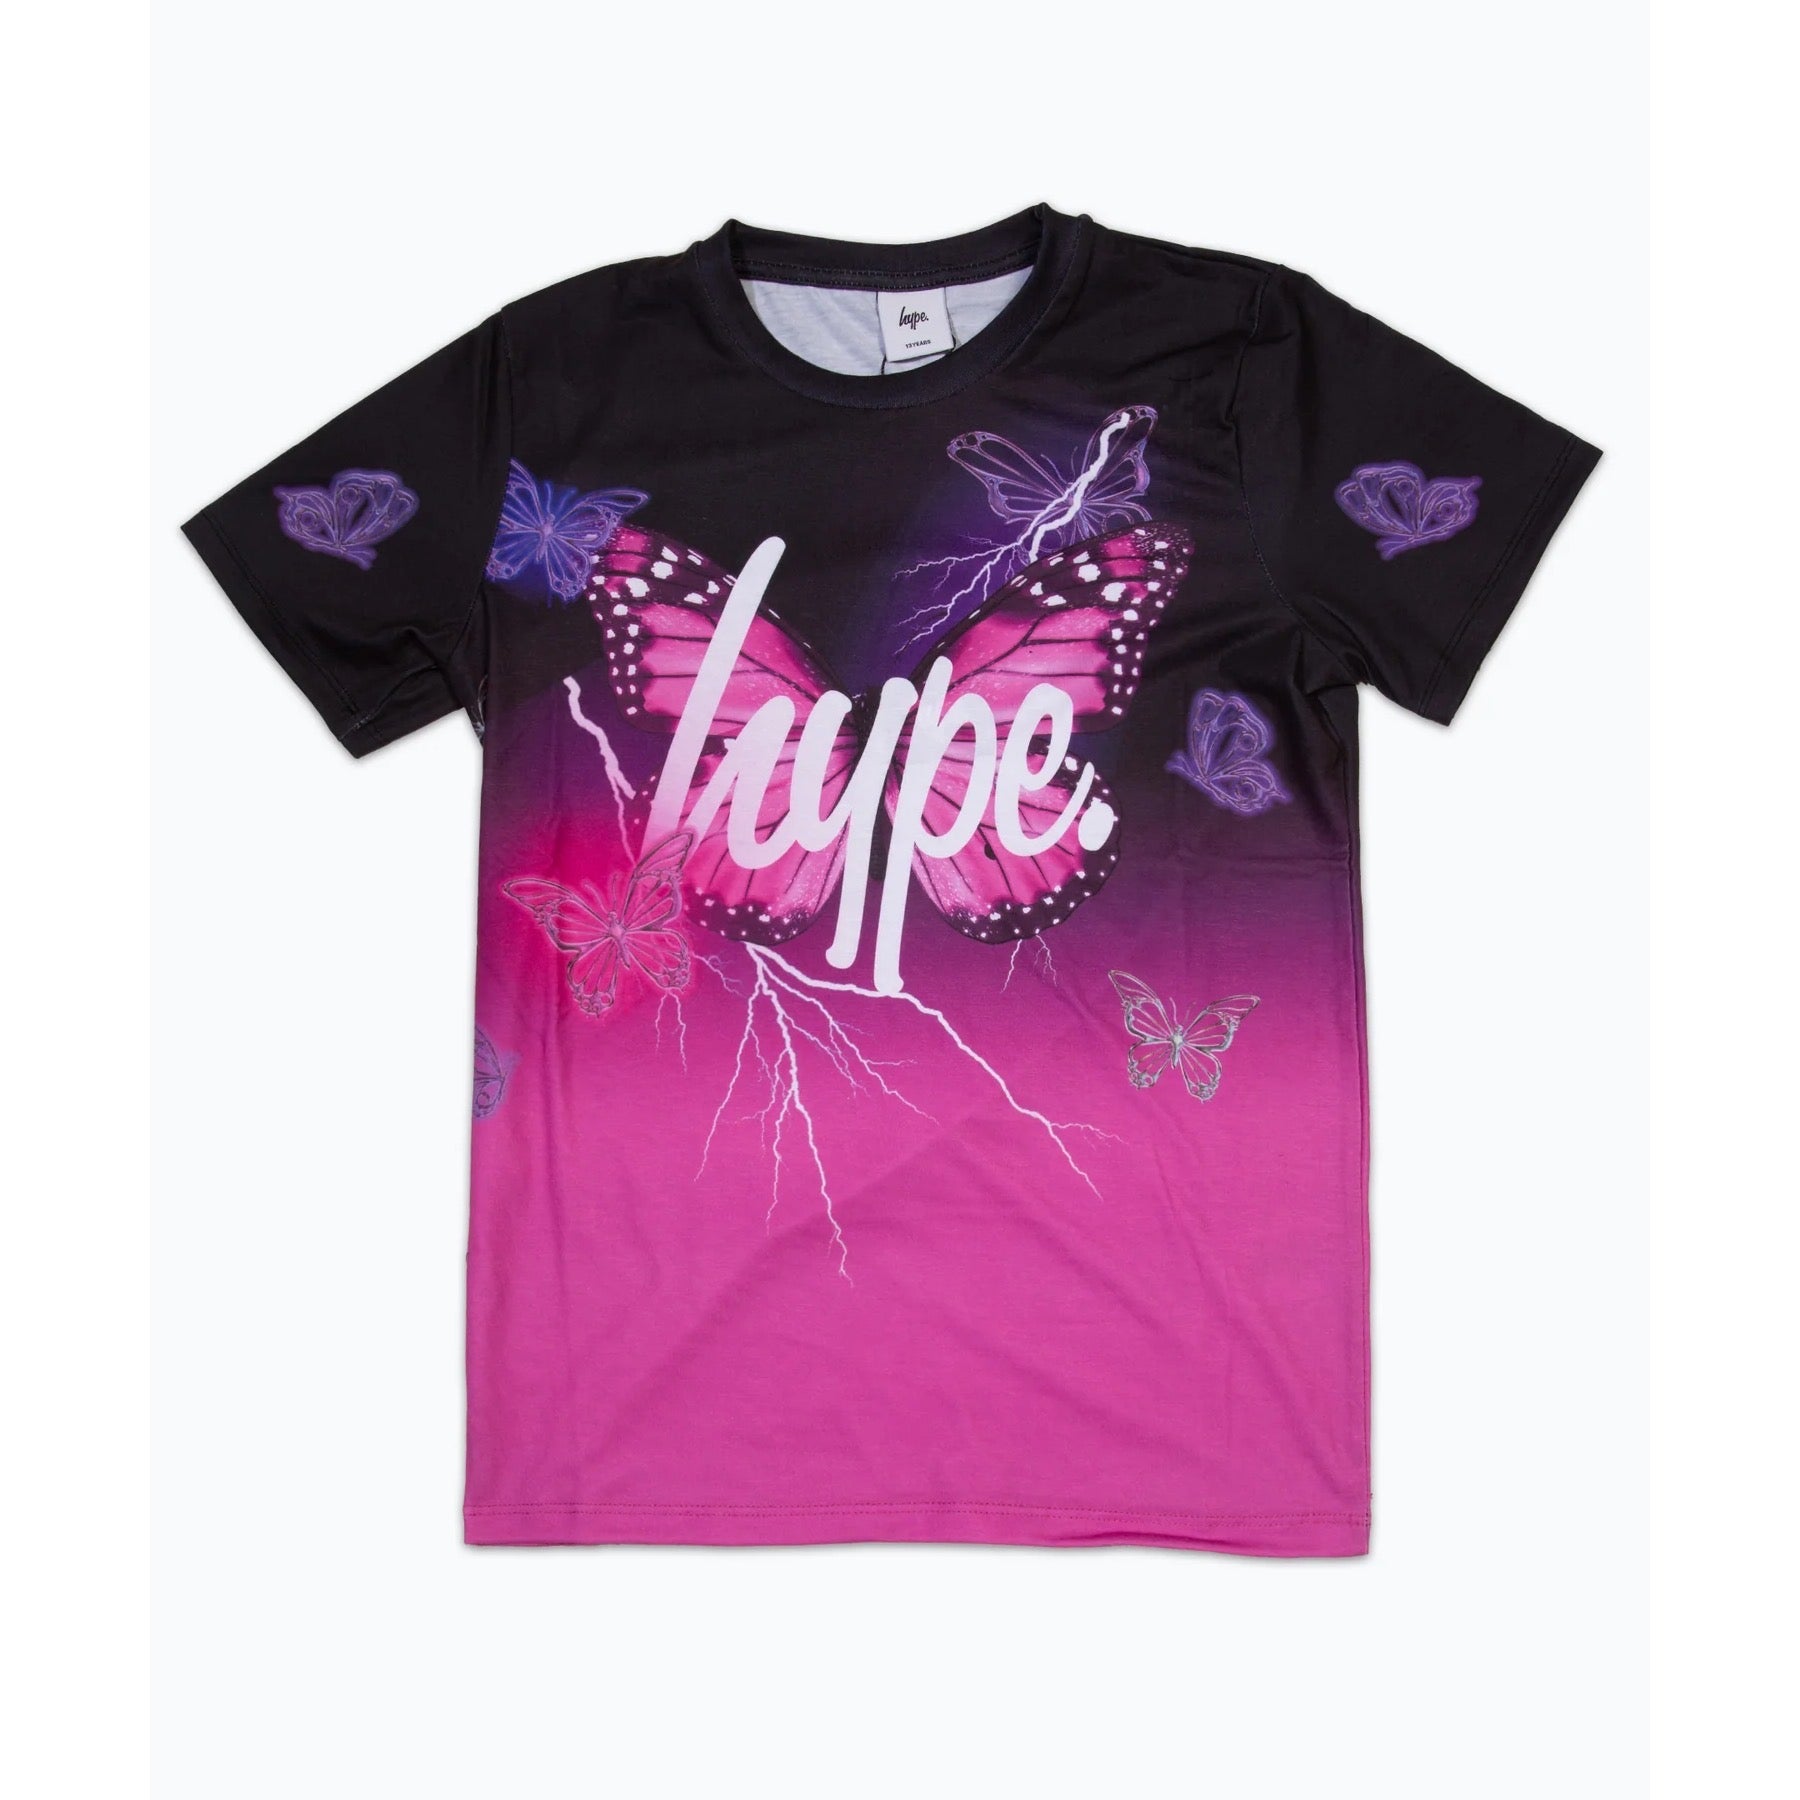 Hype Black Fade Butterfly T-Shirt Yuao-095 Clothing 9/10YRS / Black,11/12YRS / Black,13YRS / Black,14YRS / Black